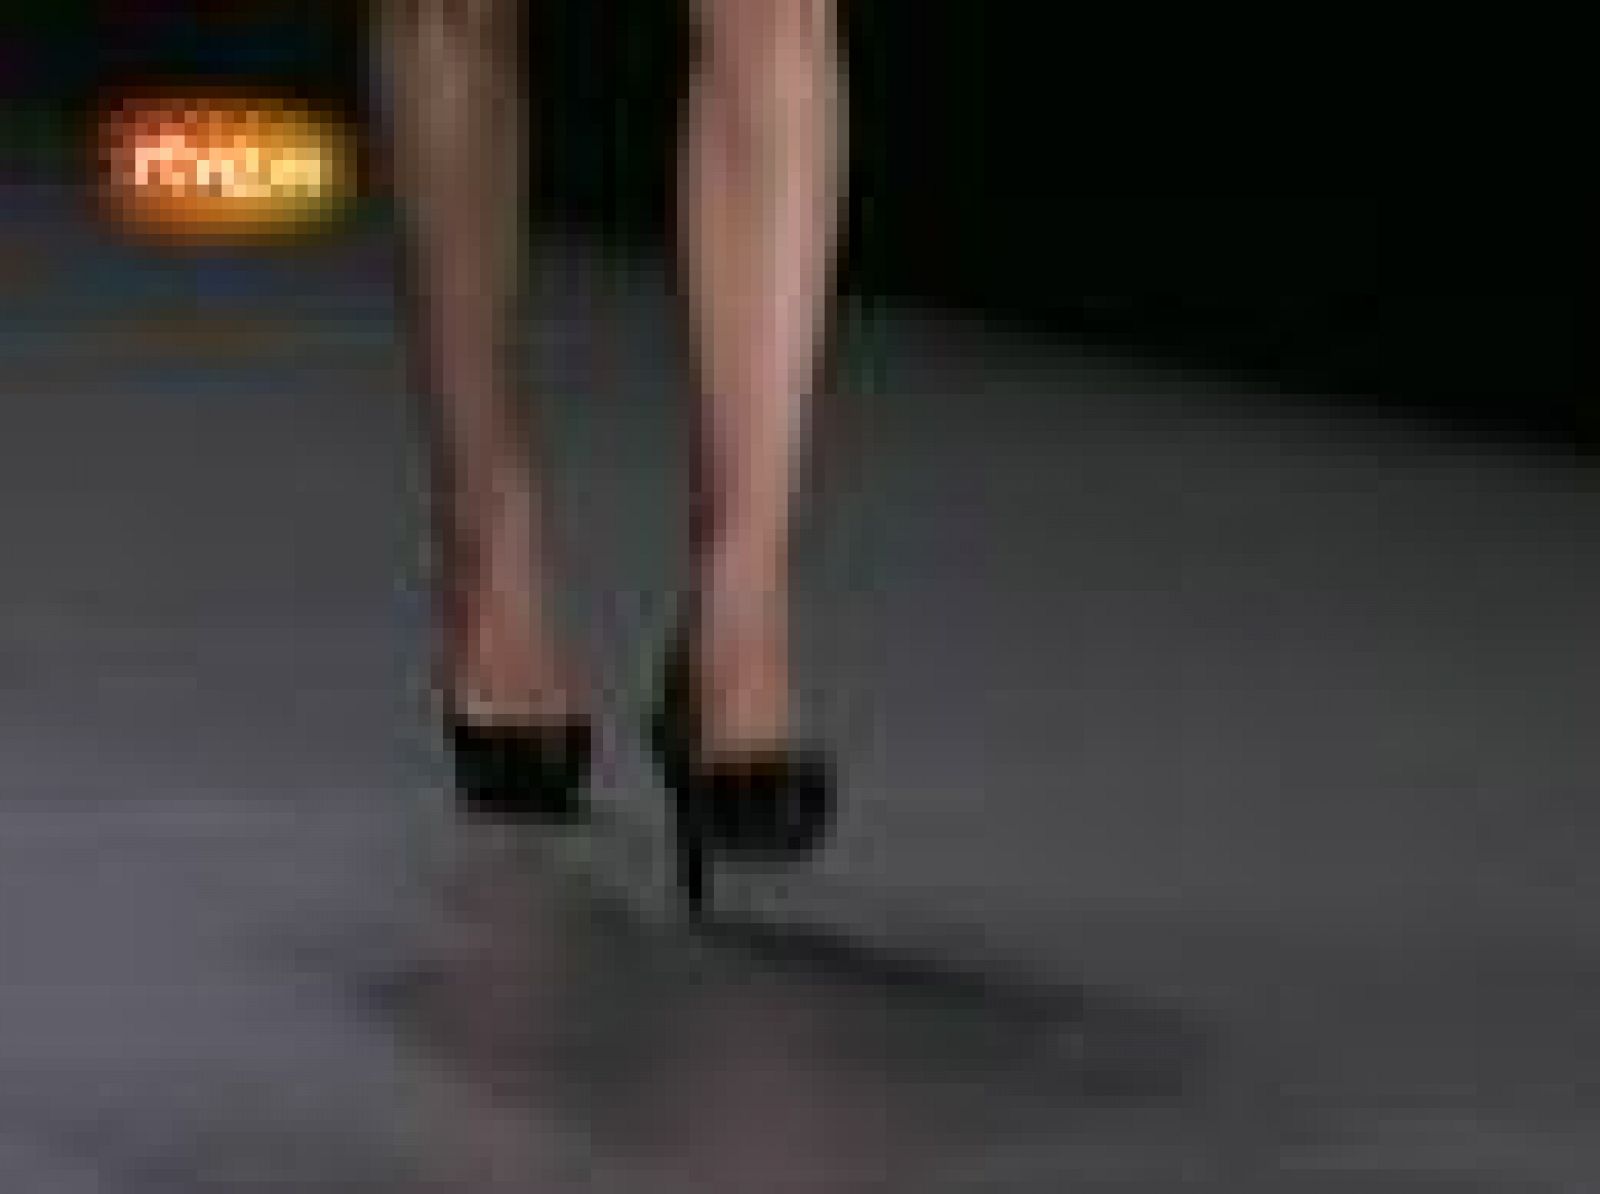   Lemoniez en Cibeles Madrid Fashion Week Septiembre 2010. Lemoniez mostró una colección que ha buscado su inspiración en los inicios de los setenta y las noches de "Le Palace". Vestidos largos, fluidos tipo túnica sin complicaciones, escotados en espalda y delanteros. Los pantalones son masculinos, las blusas con lazada, y la sastrería tipo smoking. La utilización de los lunares en telas de fuertes colores como turquesas, fucsias, marrones y negros fueron punto de atención en una colección muy a la medida de este diseñador.